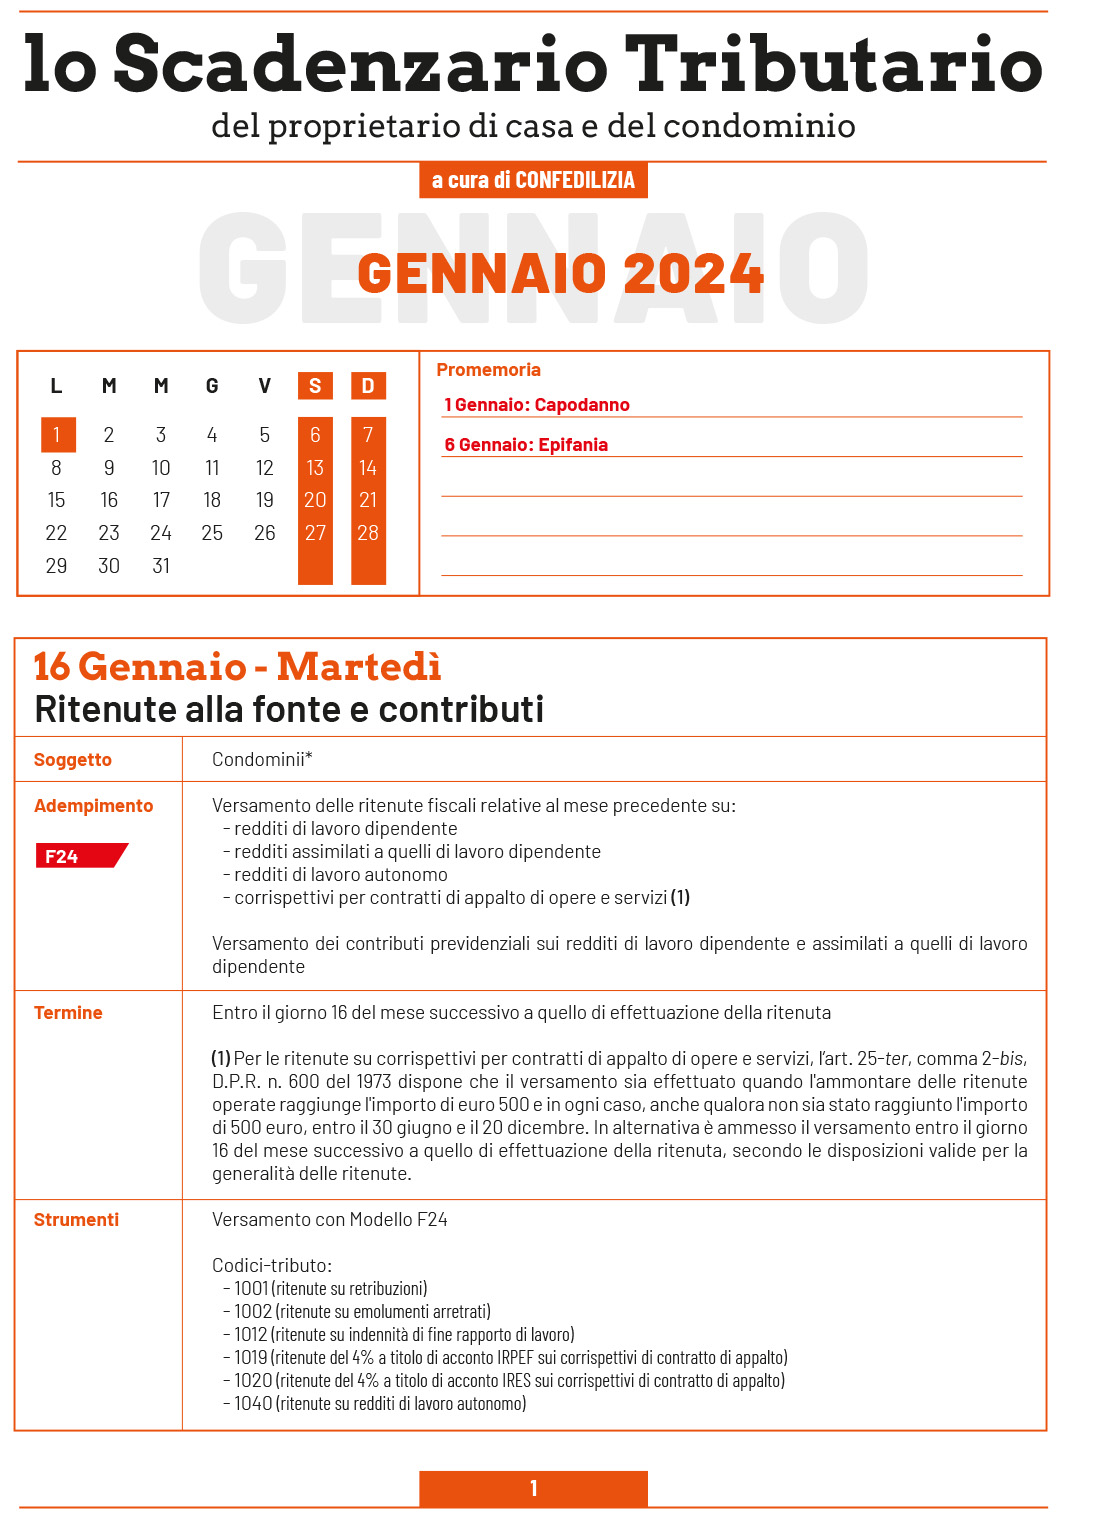 SCADENZARIO TRIBUTARIO GENNAIO 2024 (7 pagg.)-1